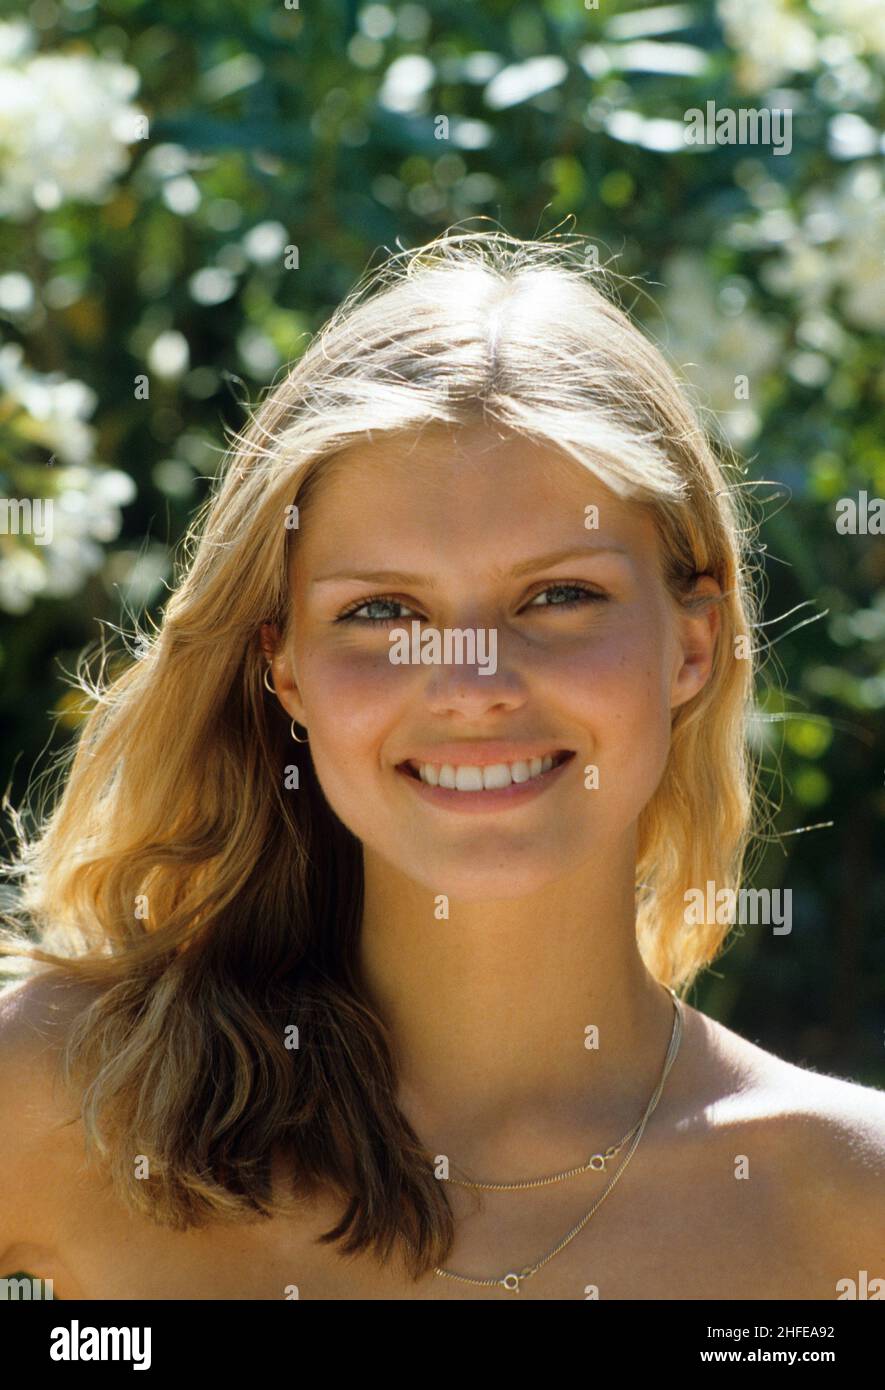 Blonde Haare ausdrucksstark lächelnd glücklich junge Frau Porträt suchen Frontkamera unterhellgrün natürlichen Laub Hintergrund Stockfoto